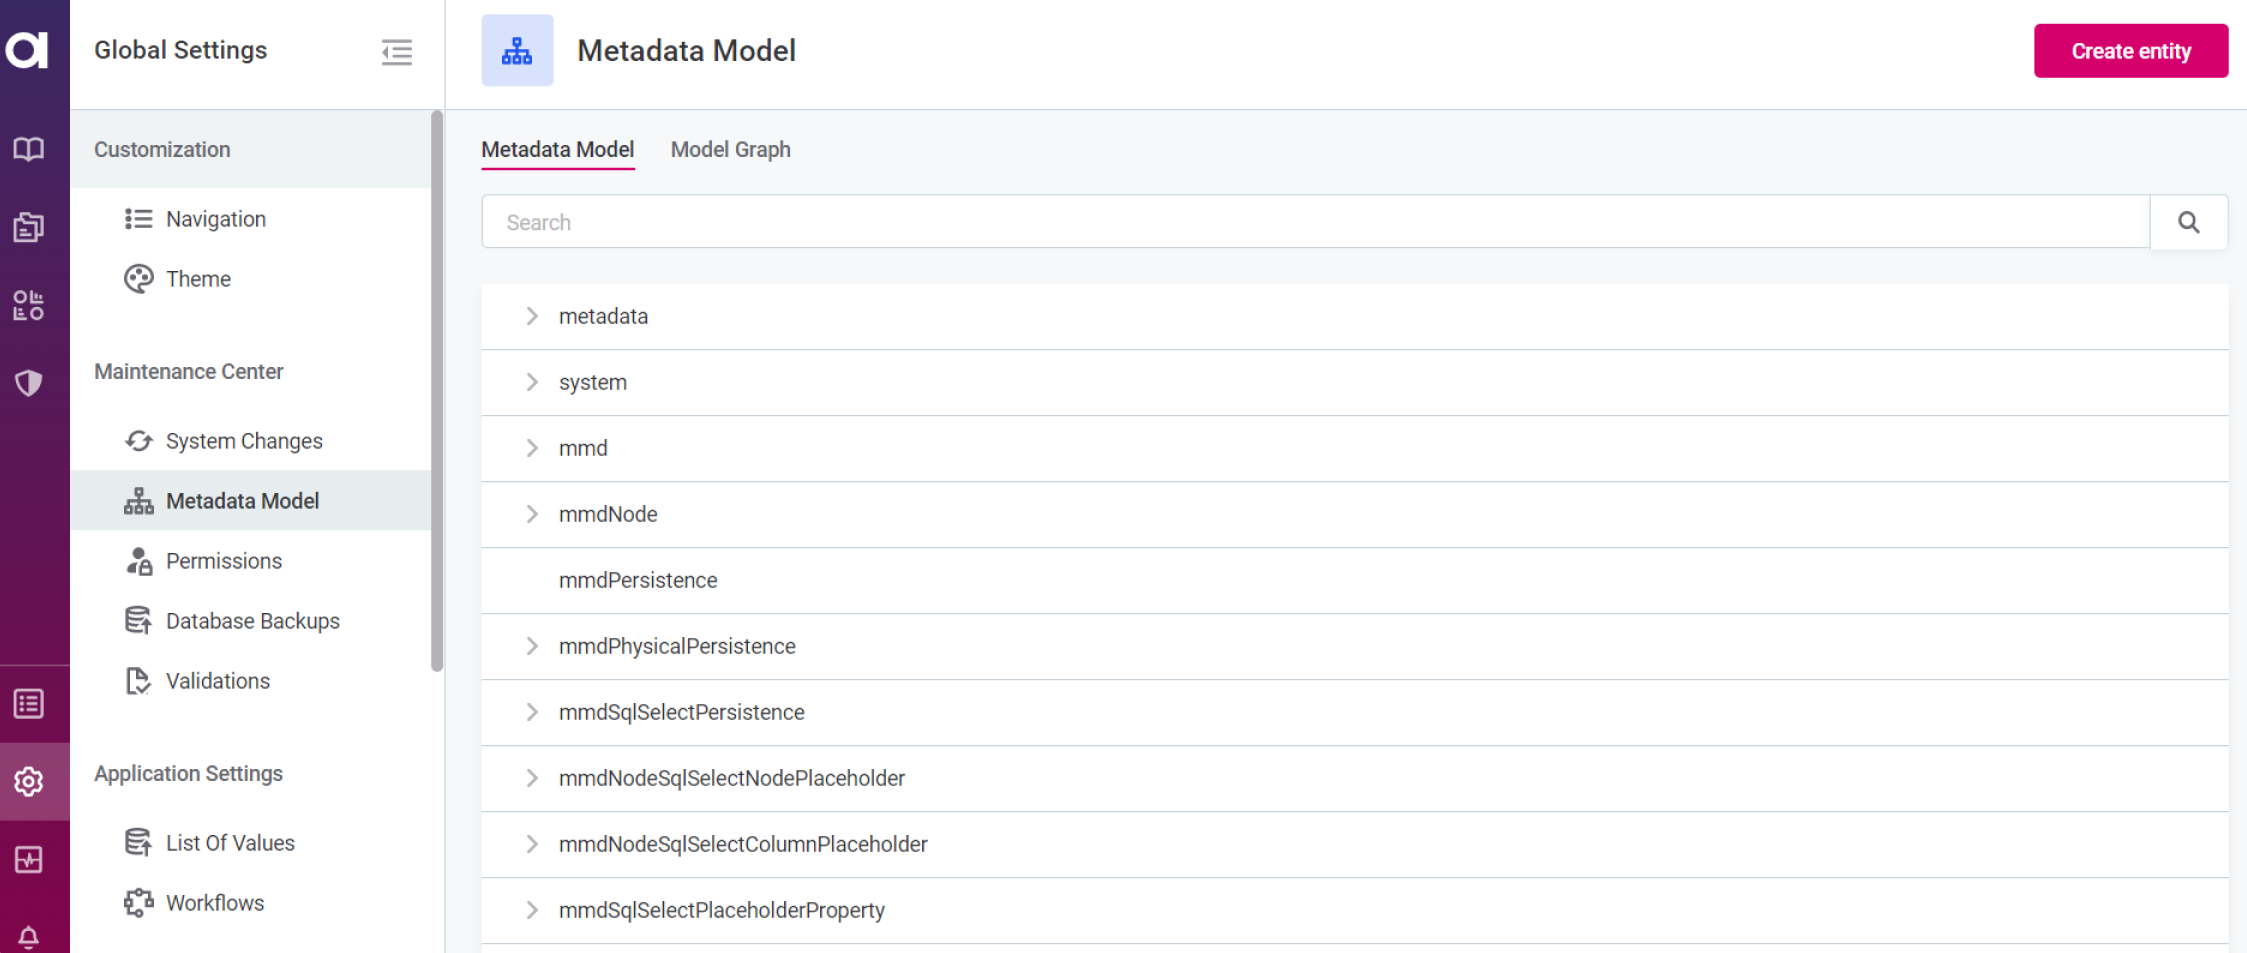 Metadata model list